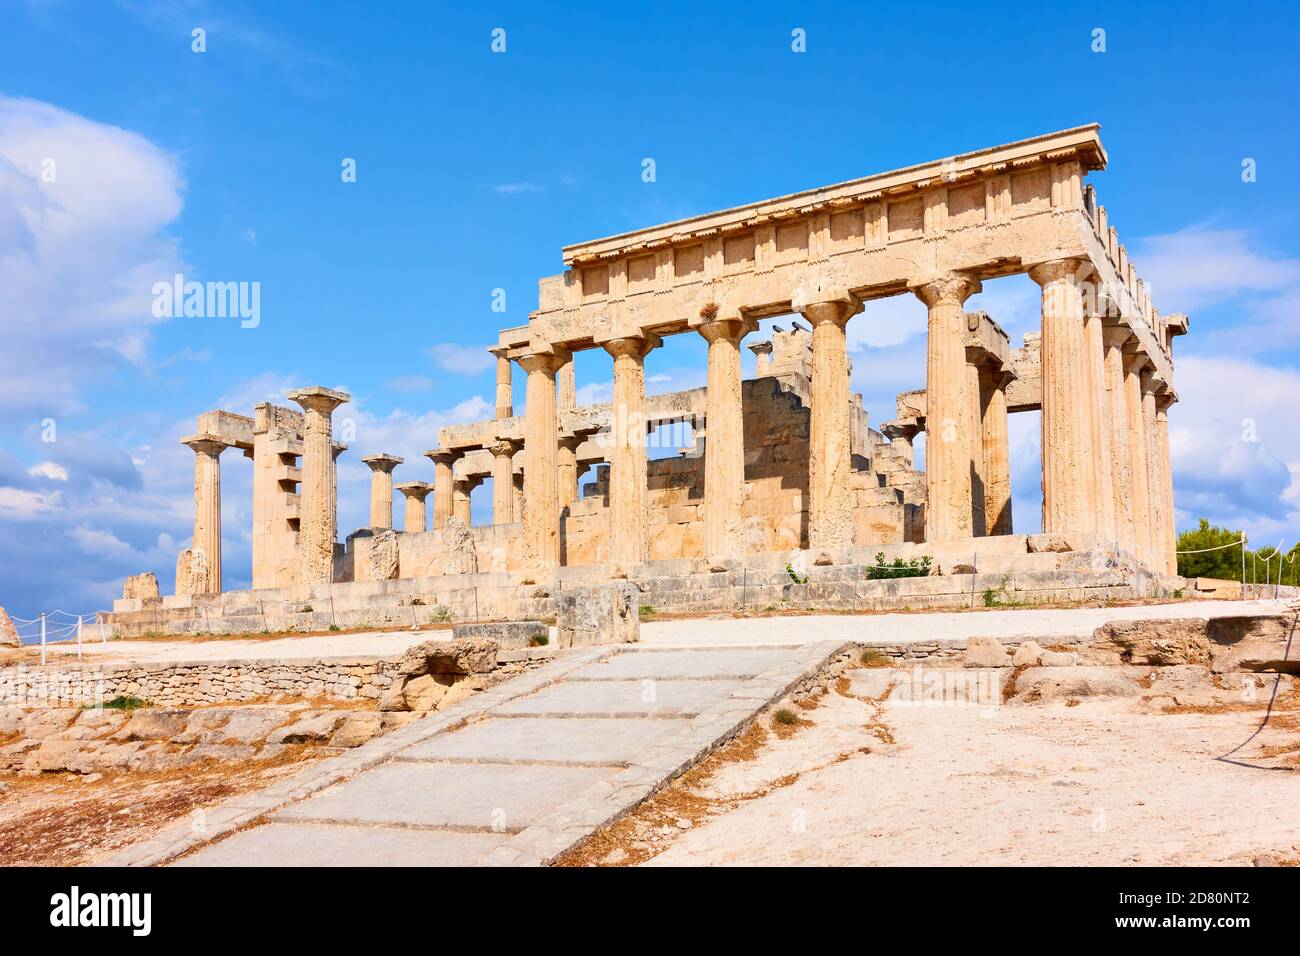 Ancien temple d'Aphaea, monument de l'île d'Aegina en Grèce. Chef-d'œuvre de l'architecture grecque ancienne. Banque D'Images